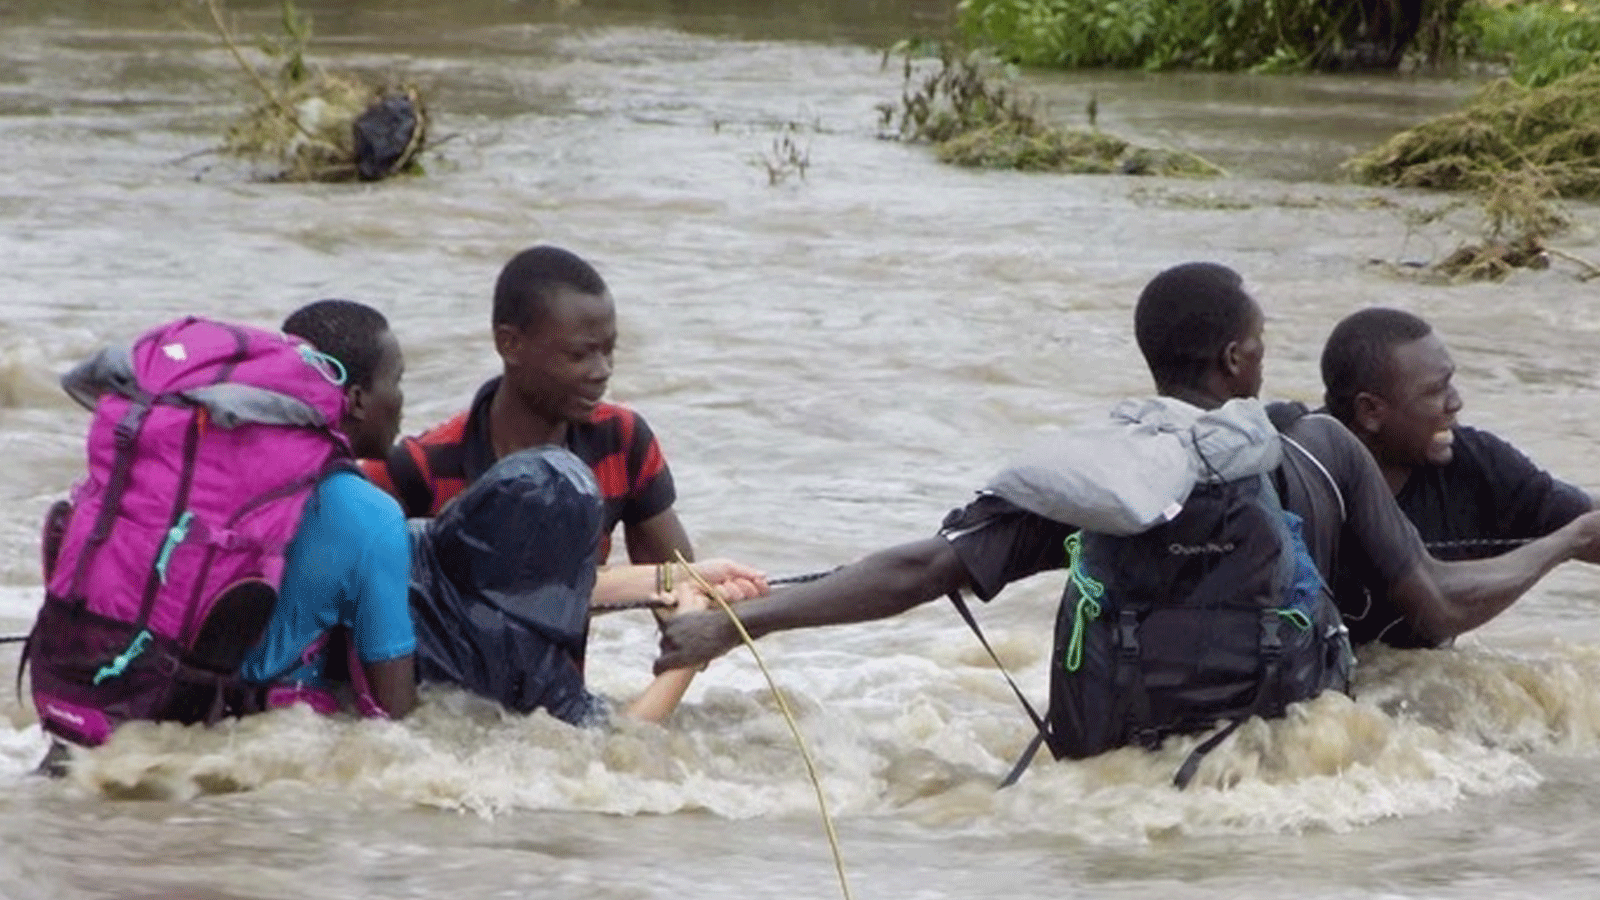  صورة أرشيفية لمواطنين يعبرون النهر بعد جسر نيما تونجاني في منطقة بانجاني شرق شمال تنزانيا حيث جرفت مياه الفيضانات الجسر بعد هطول أمطار غزيرة في جميع أنحاء البلاد(Xinhua)